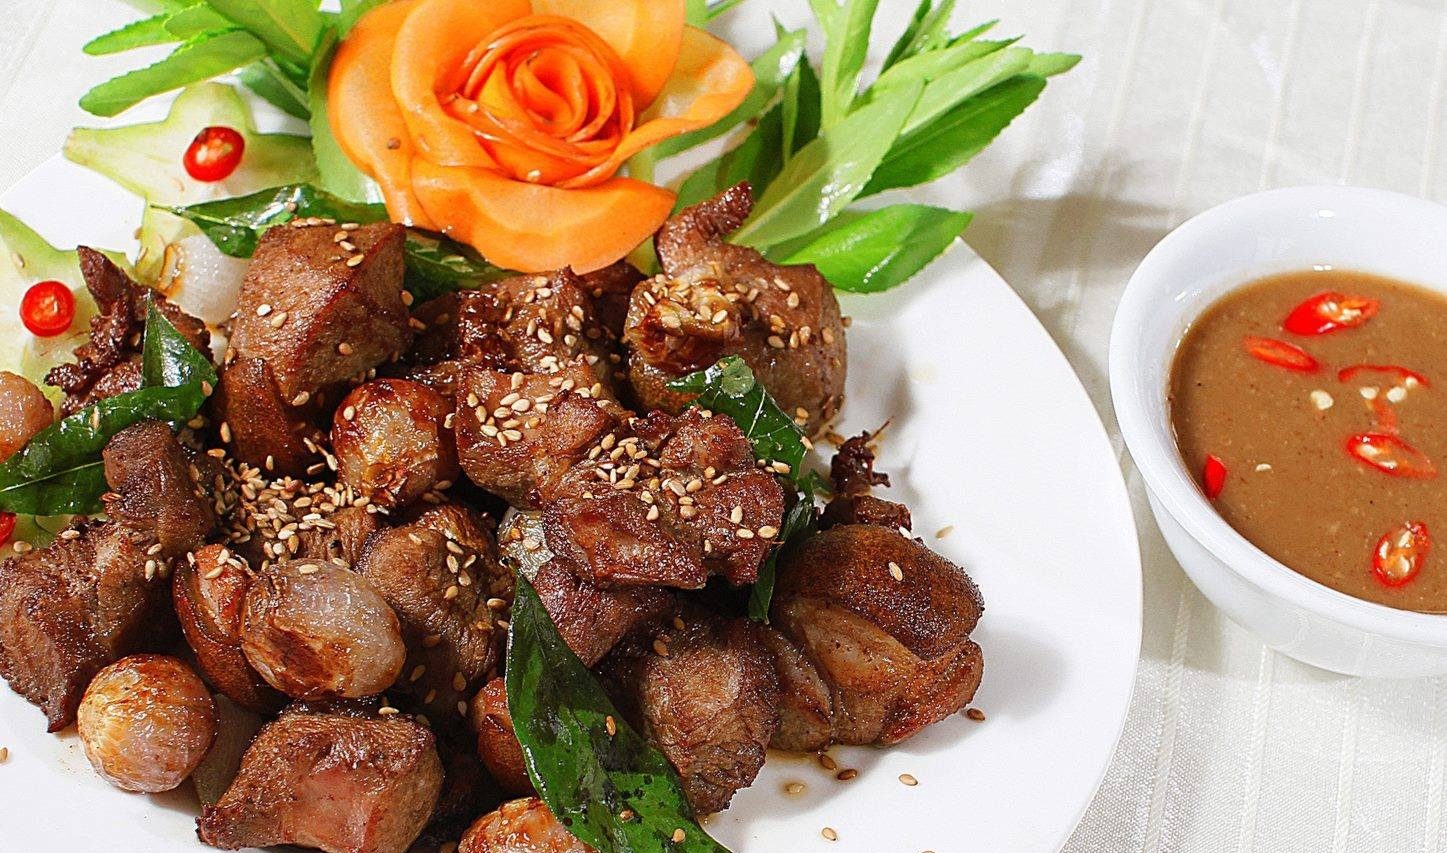 Đặc sản dê núi của tỉnh Ninh Bình - món ăn nhất định phải thử qua một lần